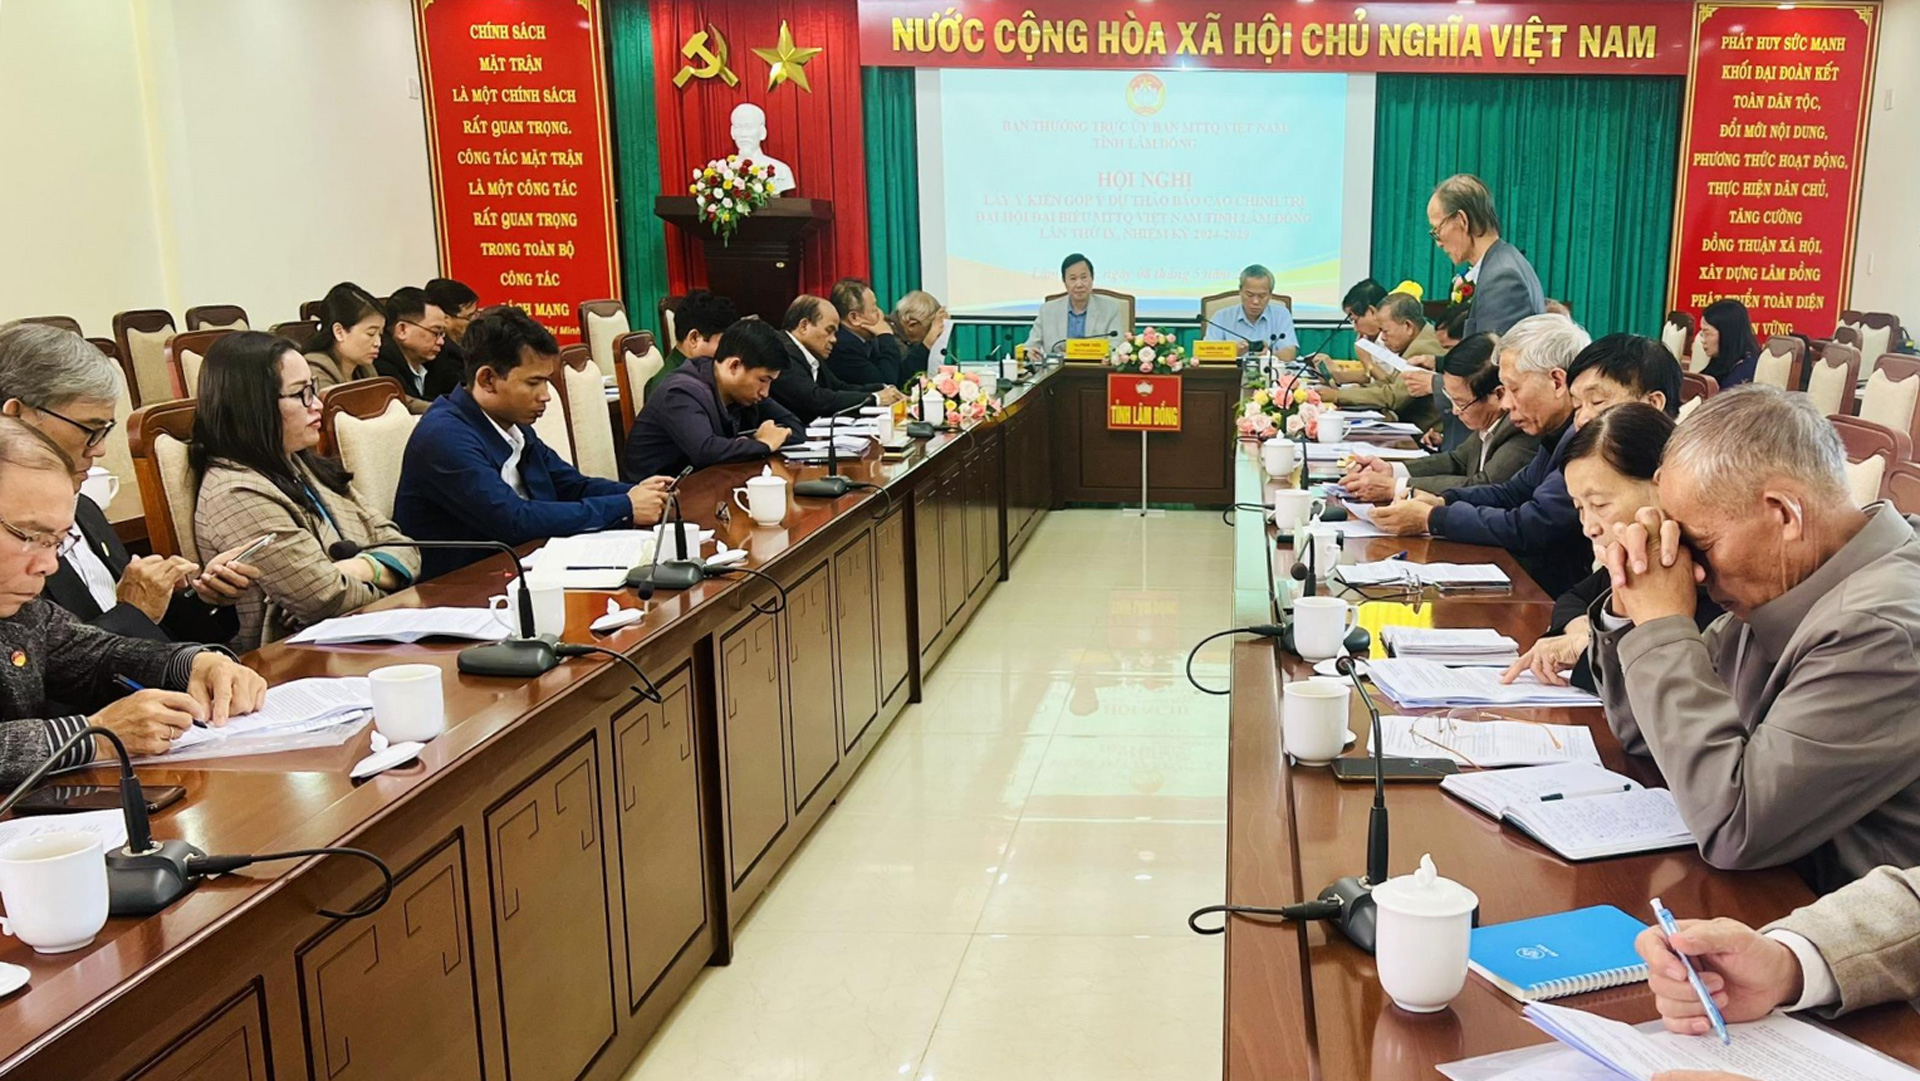 Lấy ý kiến góp ý vào dự thảo Báo cáo chính trị Đại hội đại biểu MTTQ Việt Nam tỉnh